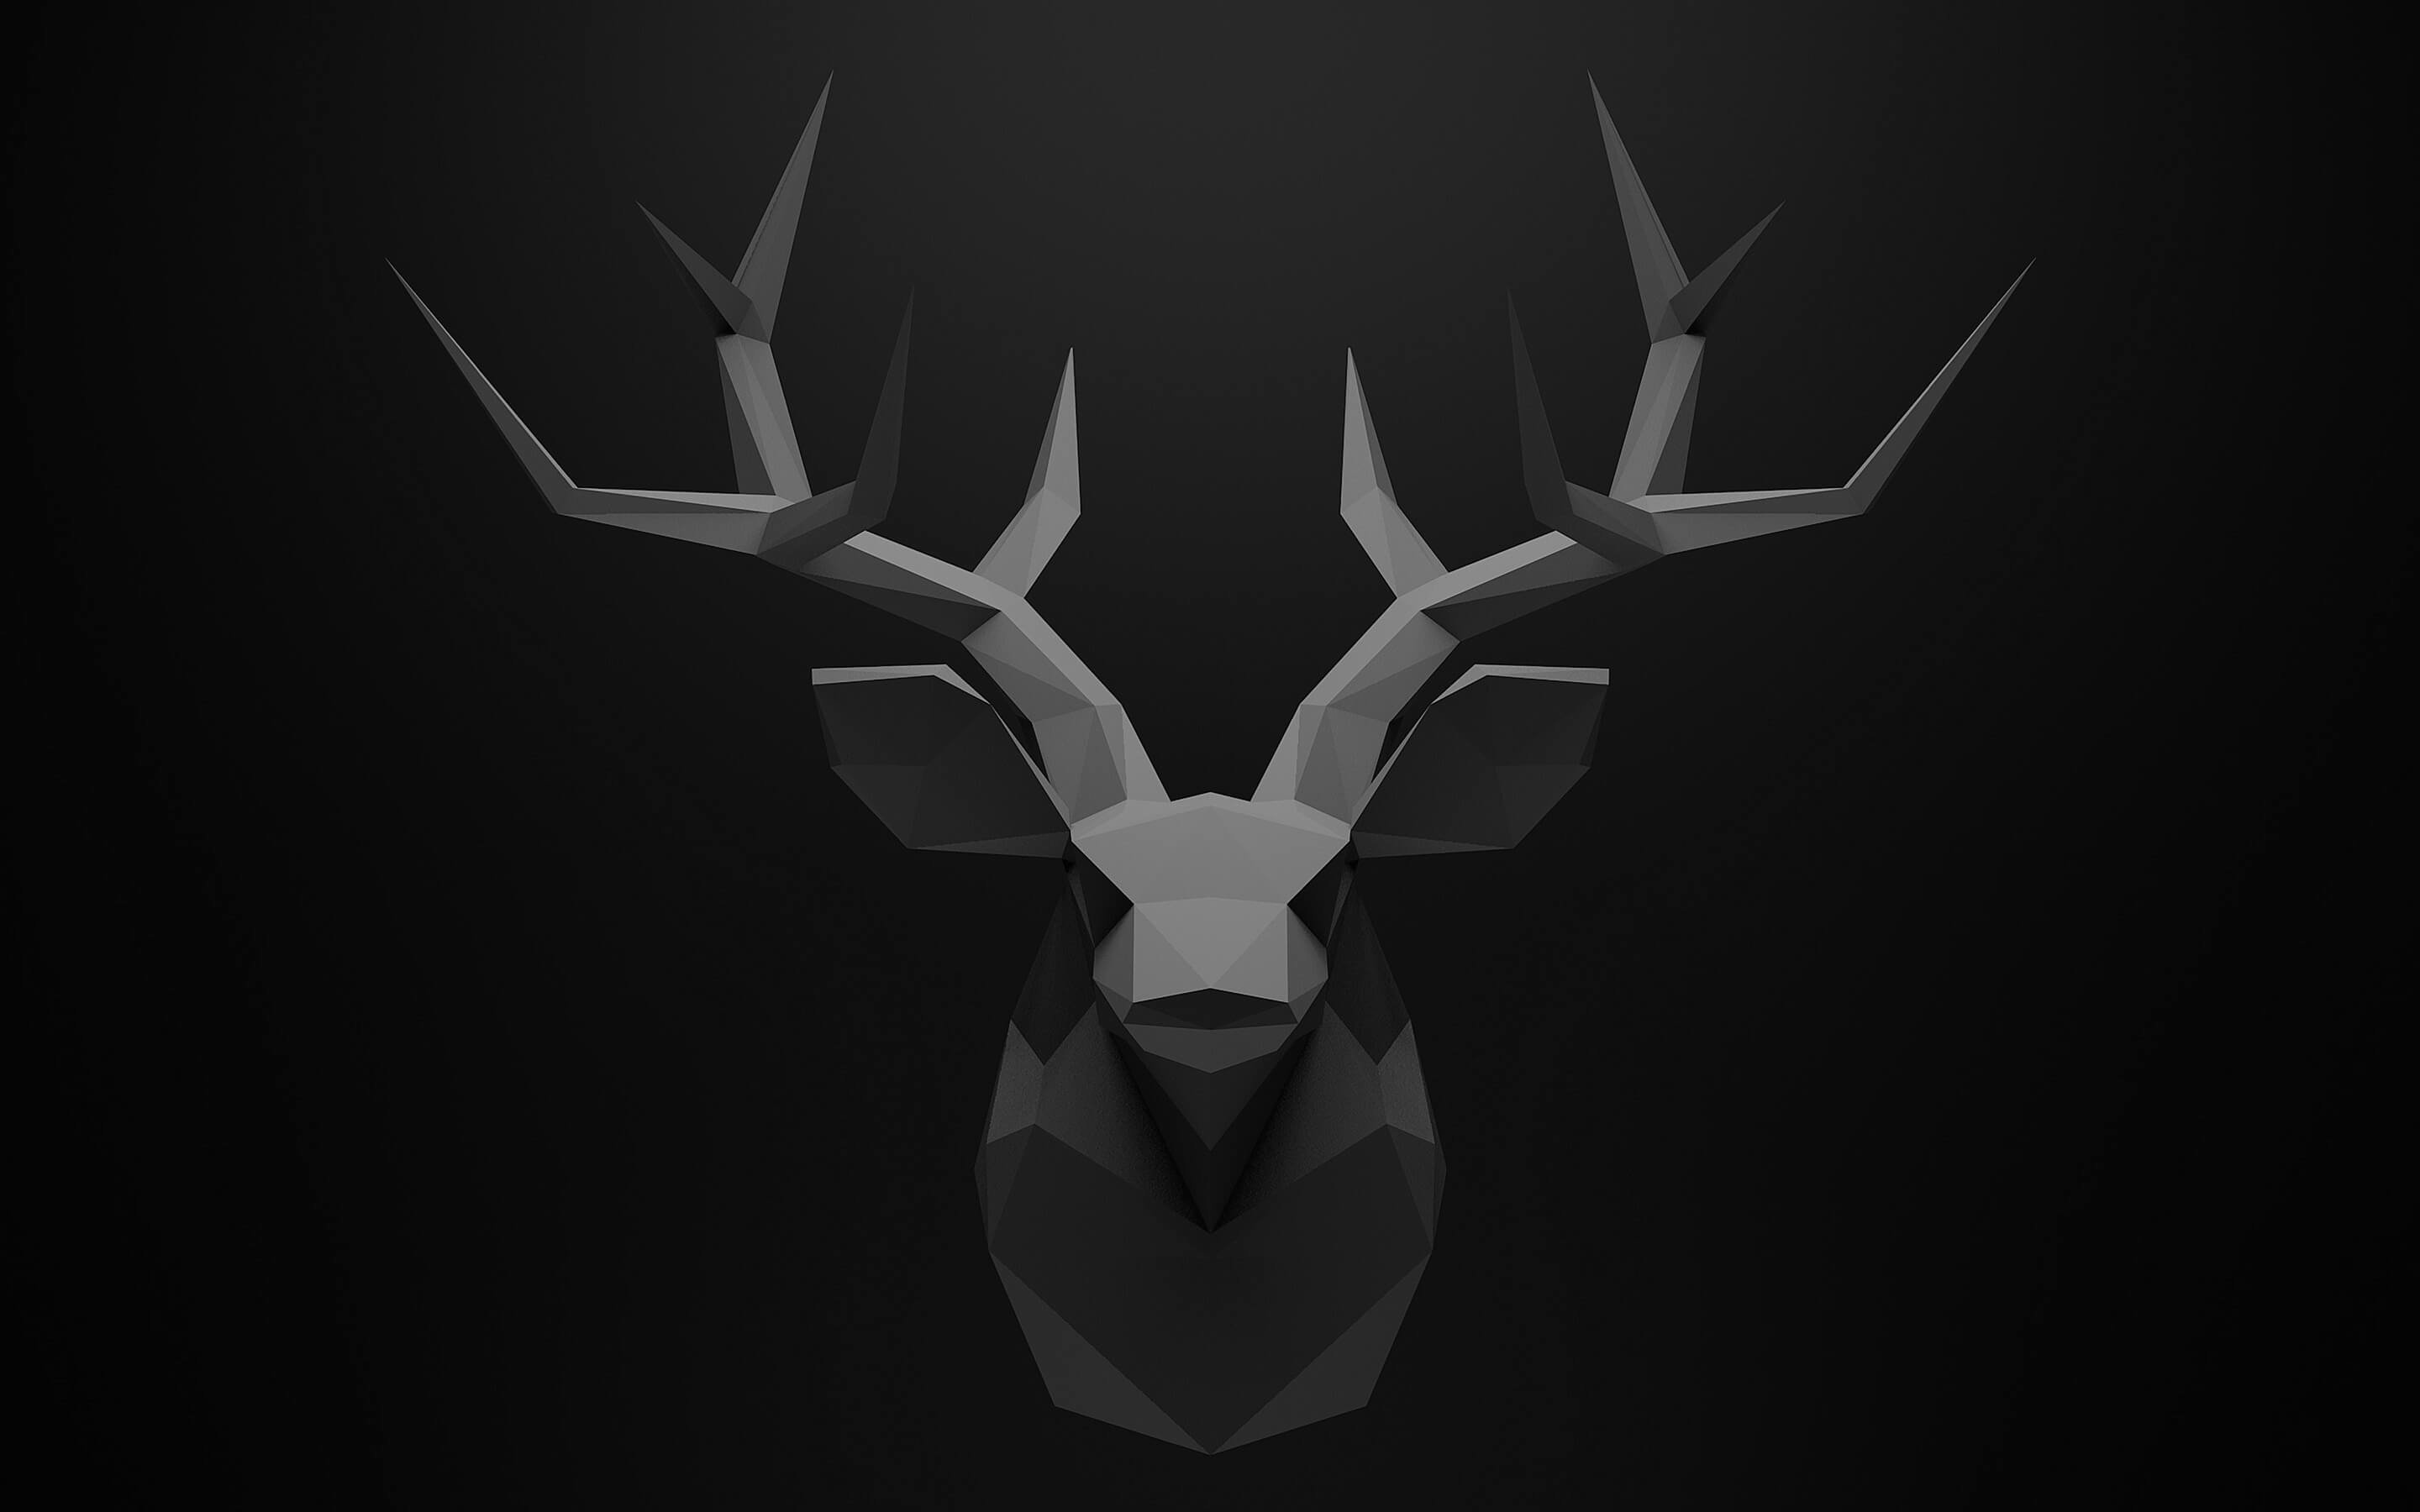 Low Poly Deer Head Wallpaper for Desktop 2880x1800